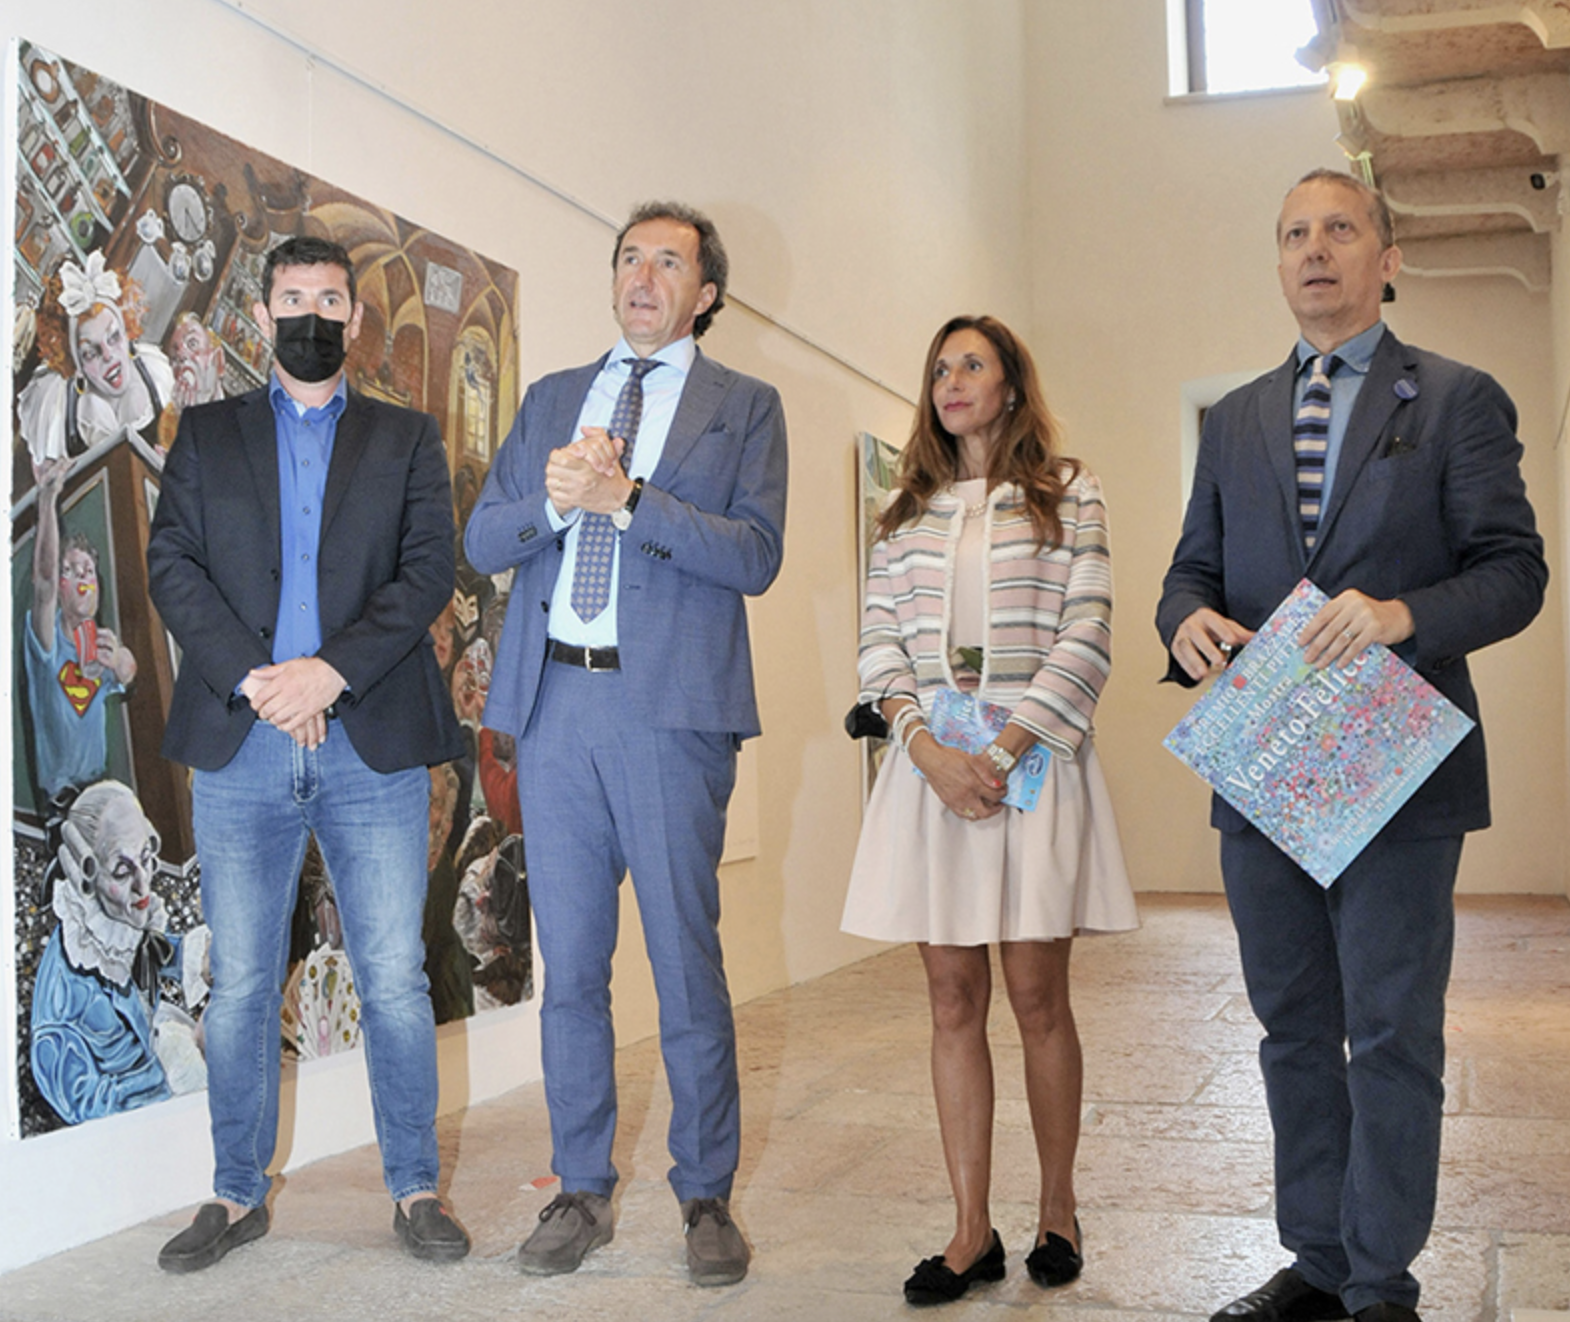 Da sinistra assessore Nicola Lobbia, Roberto Brazzale, dott.ssa Lucia Spolverini, curatrice del museo delle Carceri, e Camillo Langone alla presentazione ad Asiago della mostra "Veneto felice" e del premio "Eccellenti pittori - Brazzale"